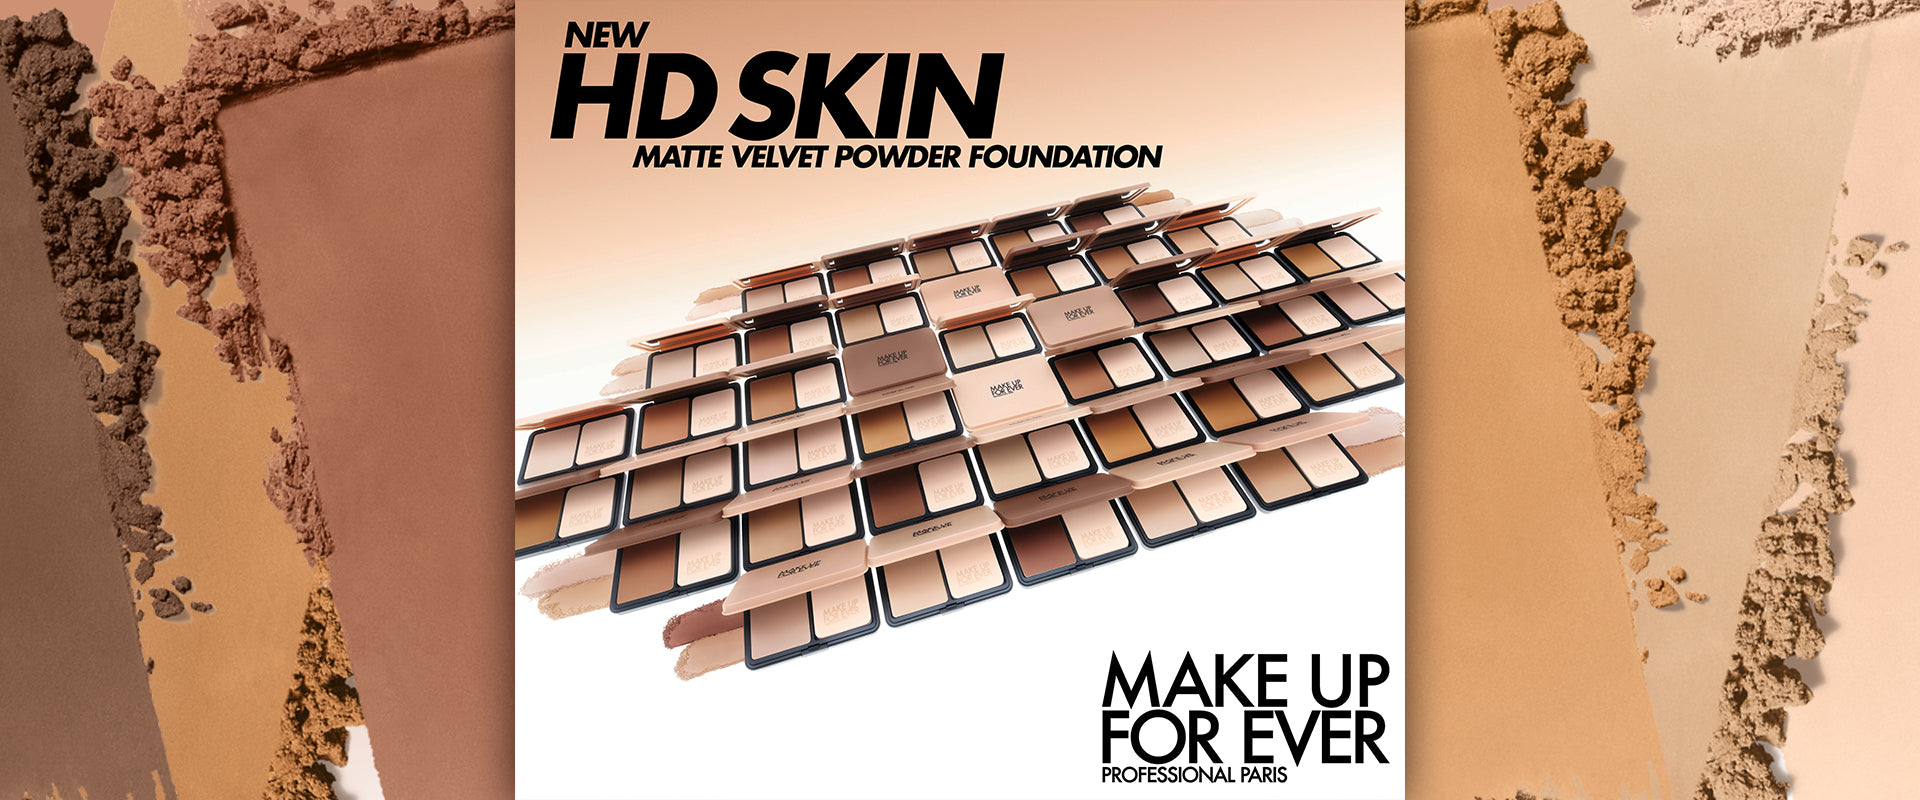 Makeup Forever New HD Skin Matte Velvet Powder Foundation 